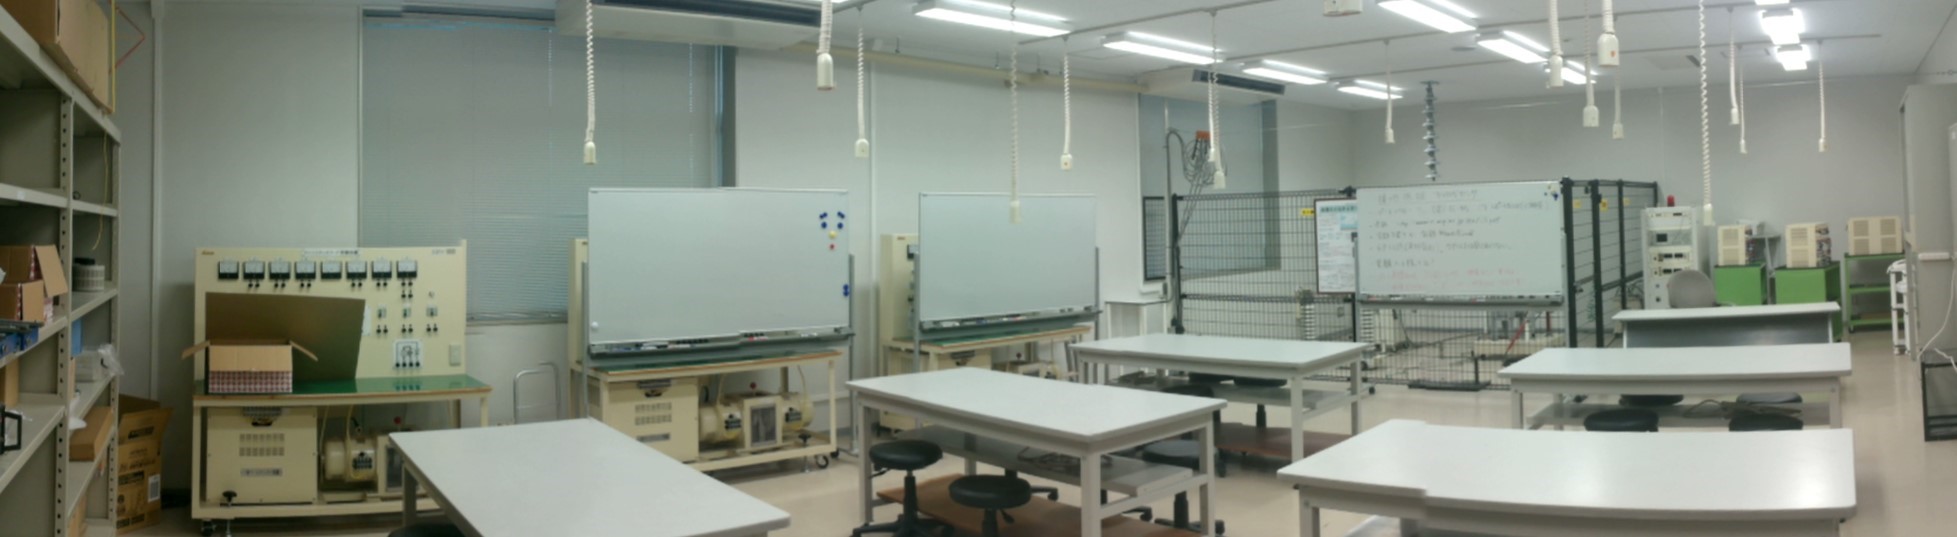 電子システム工学科C7棟 学生実験室の写真